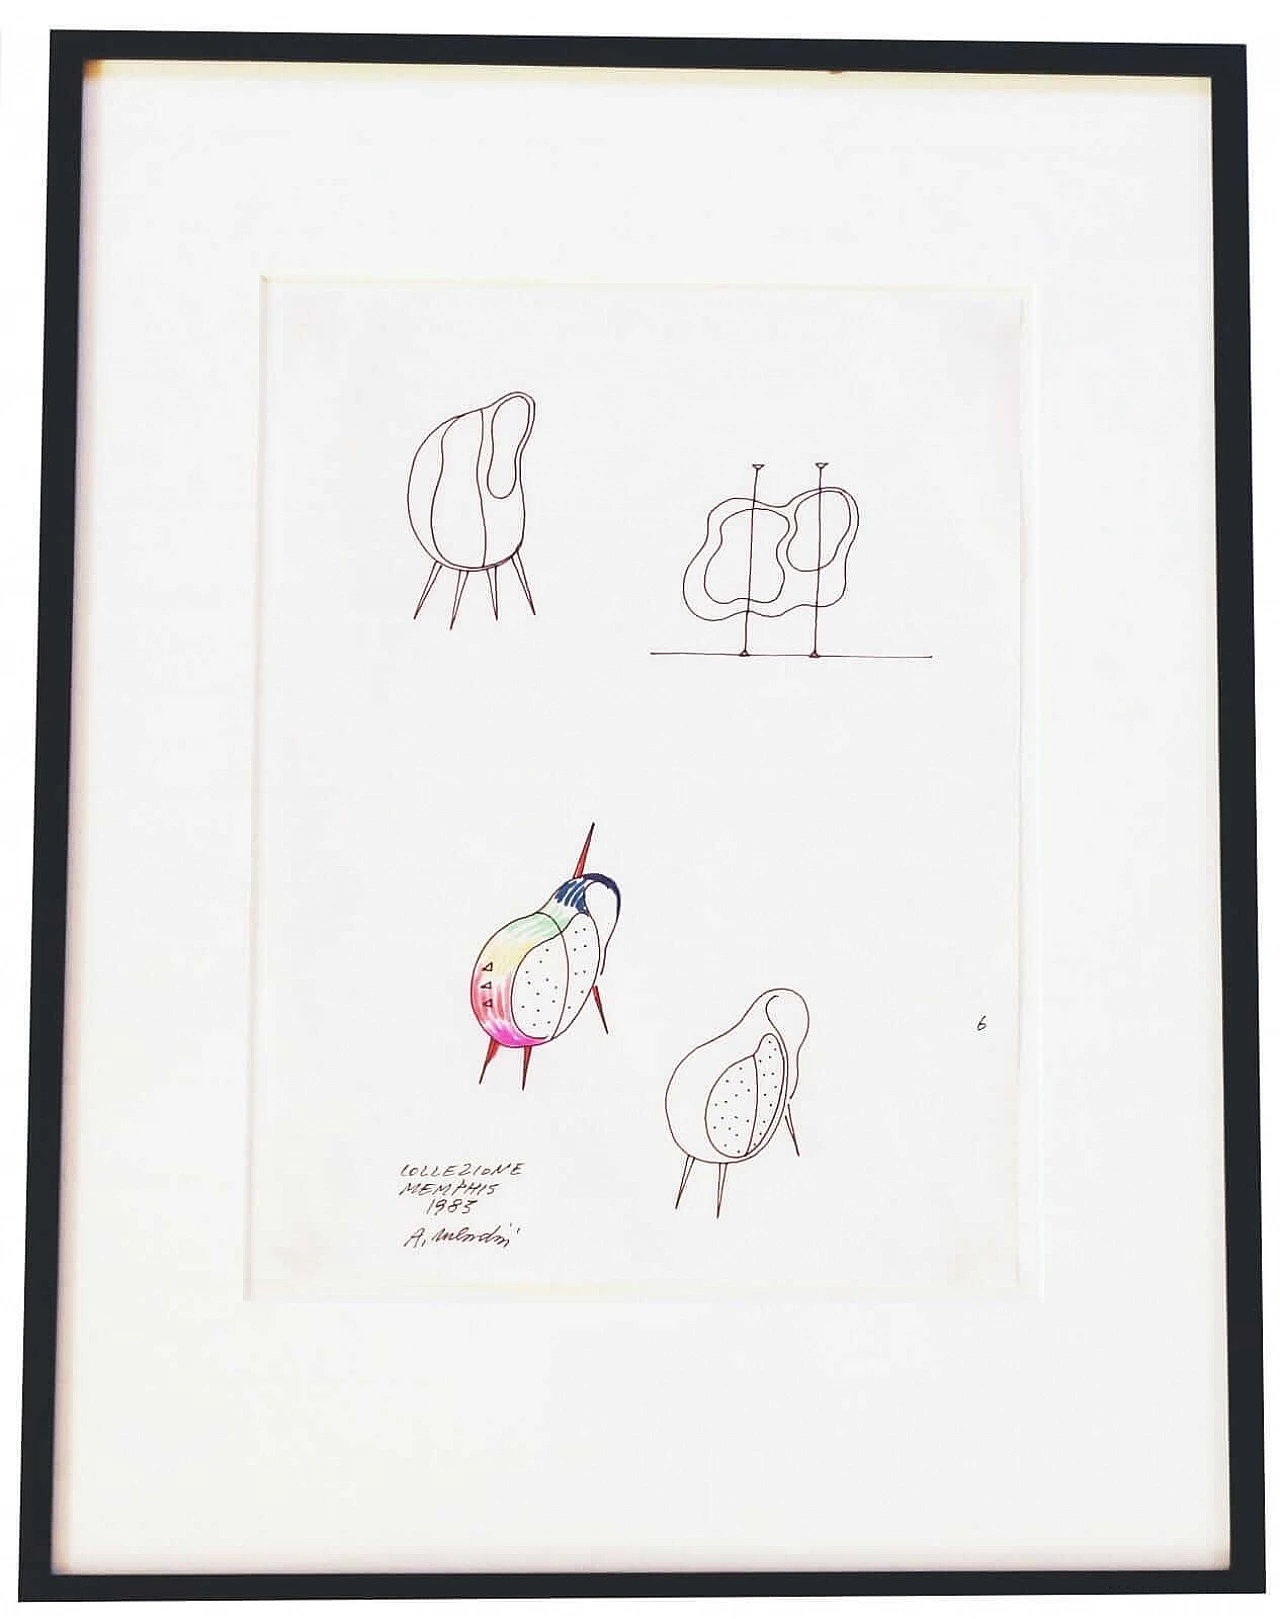 Alessandro Mendini, Mobile per Memphis, schizzo a matite colorate e pennarello su carta, 1983 4